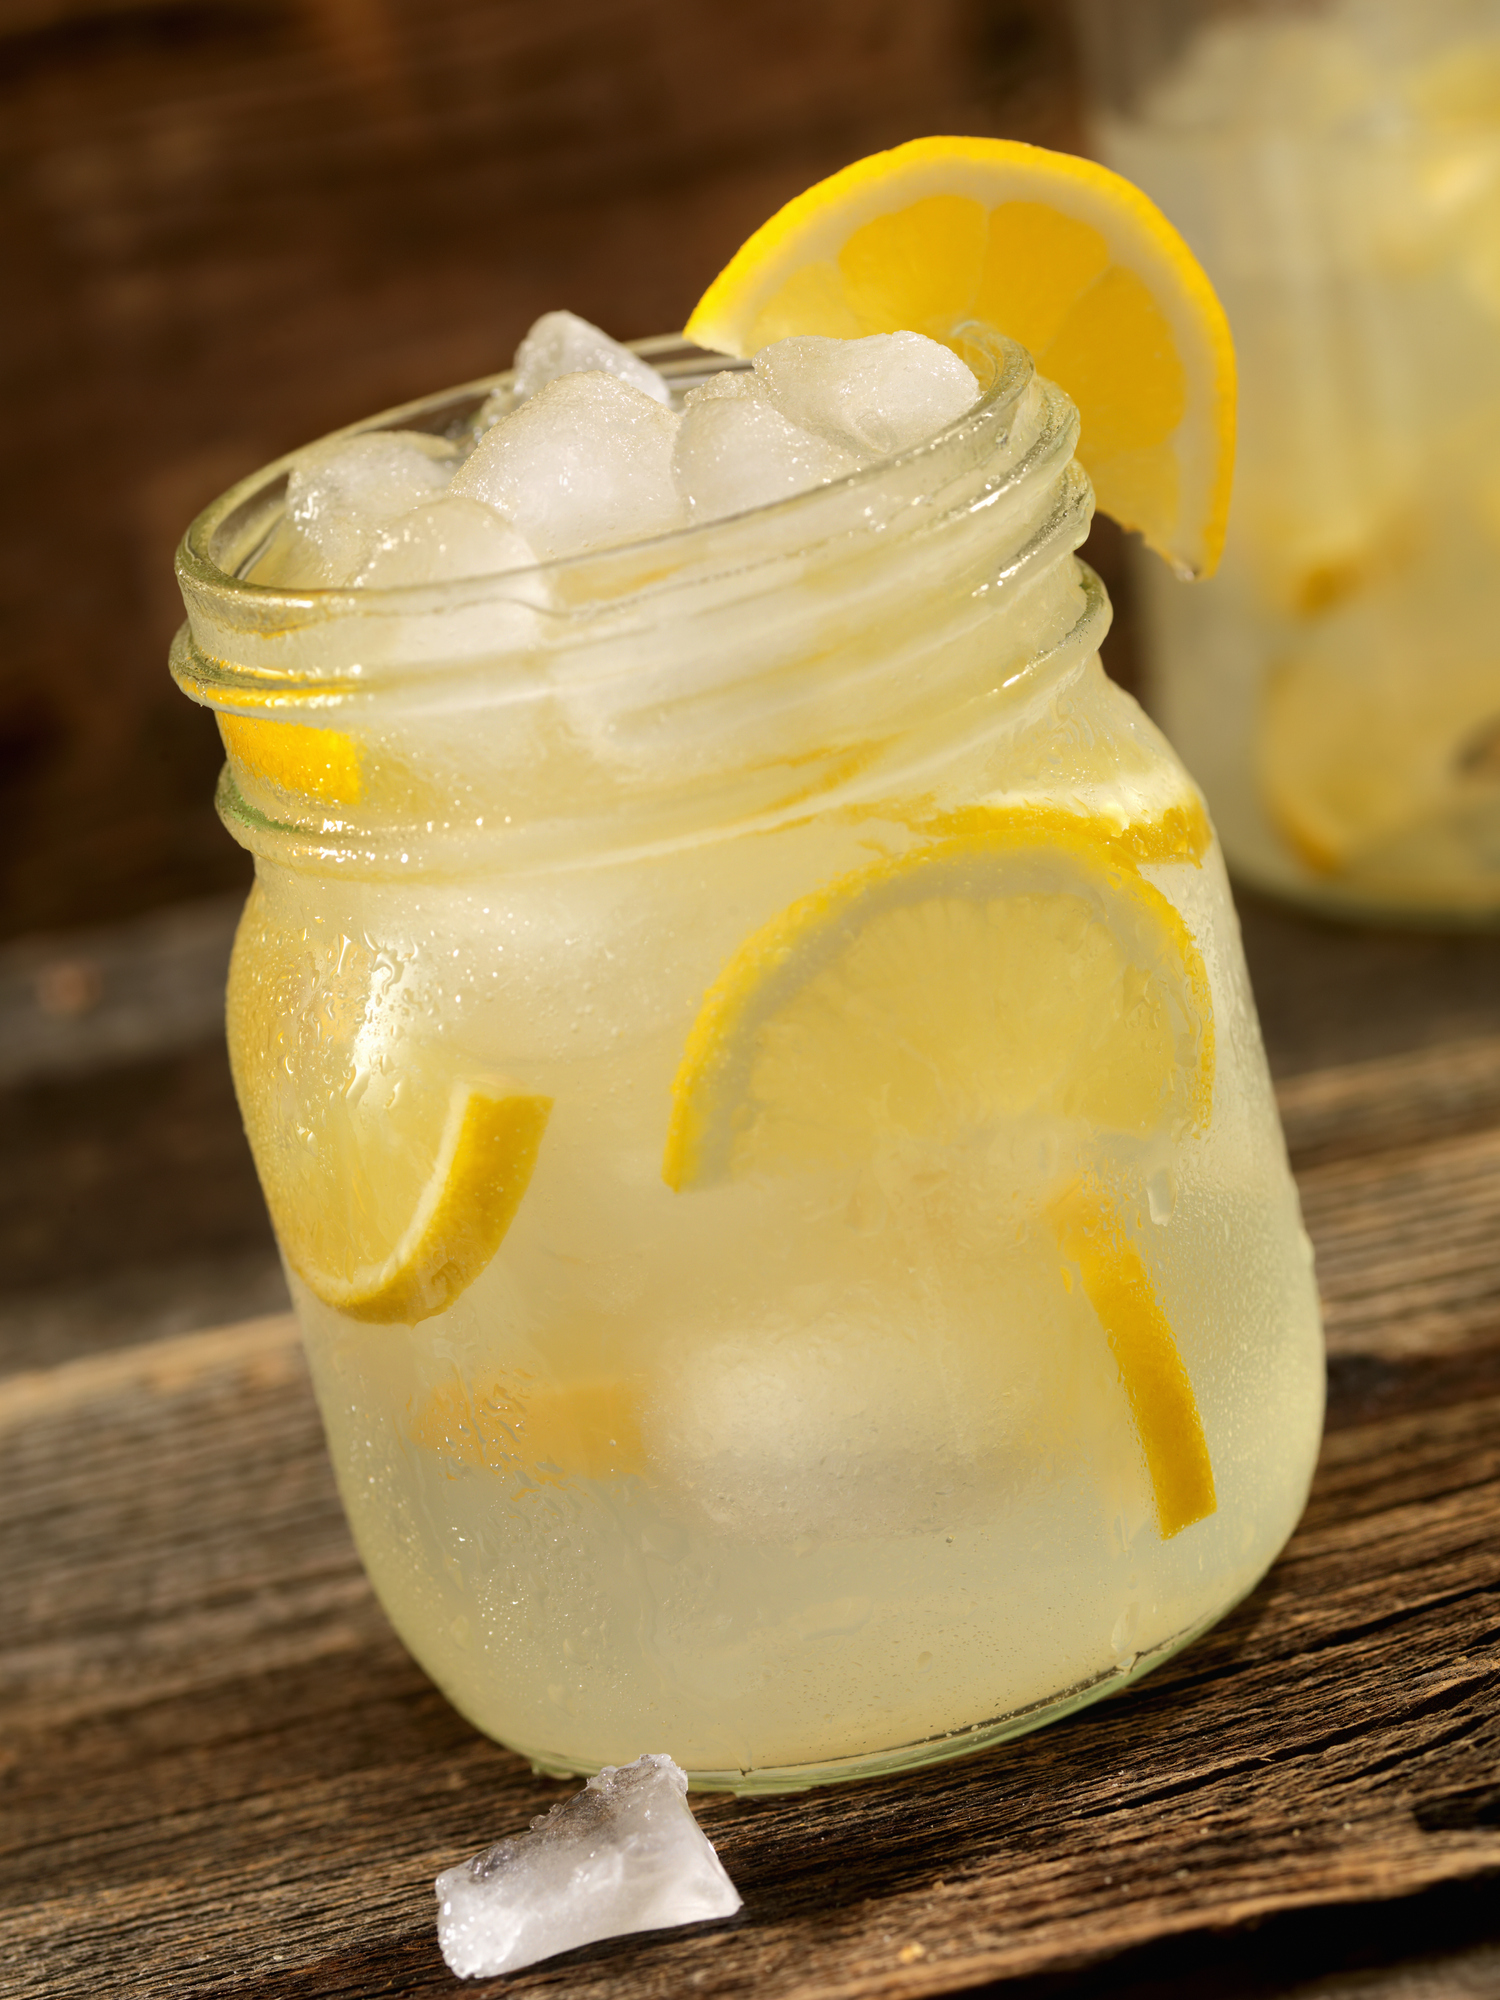 "Algo más refrescante puede ser un lynchburg lemonade, también con whisky americano, le podés dar un toque con otro whisky, limón, un toque de sirope, licor de naranja y refresco de lima limón", dijo Cabrera
